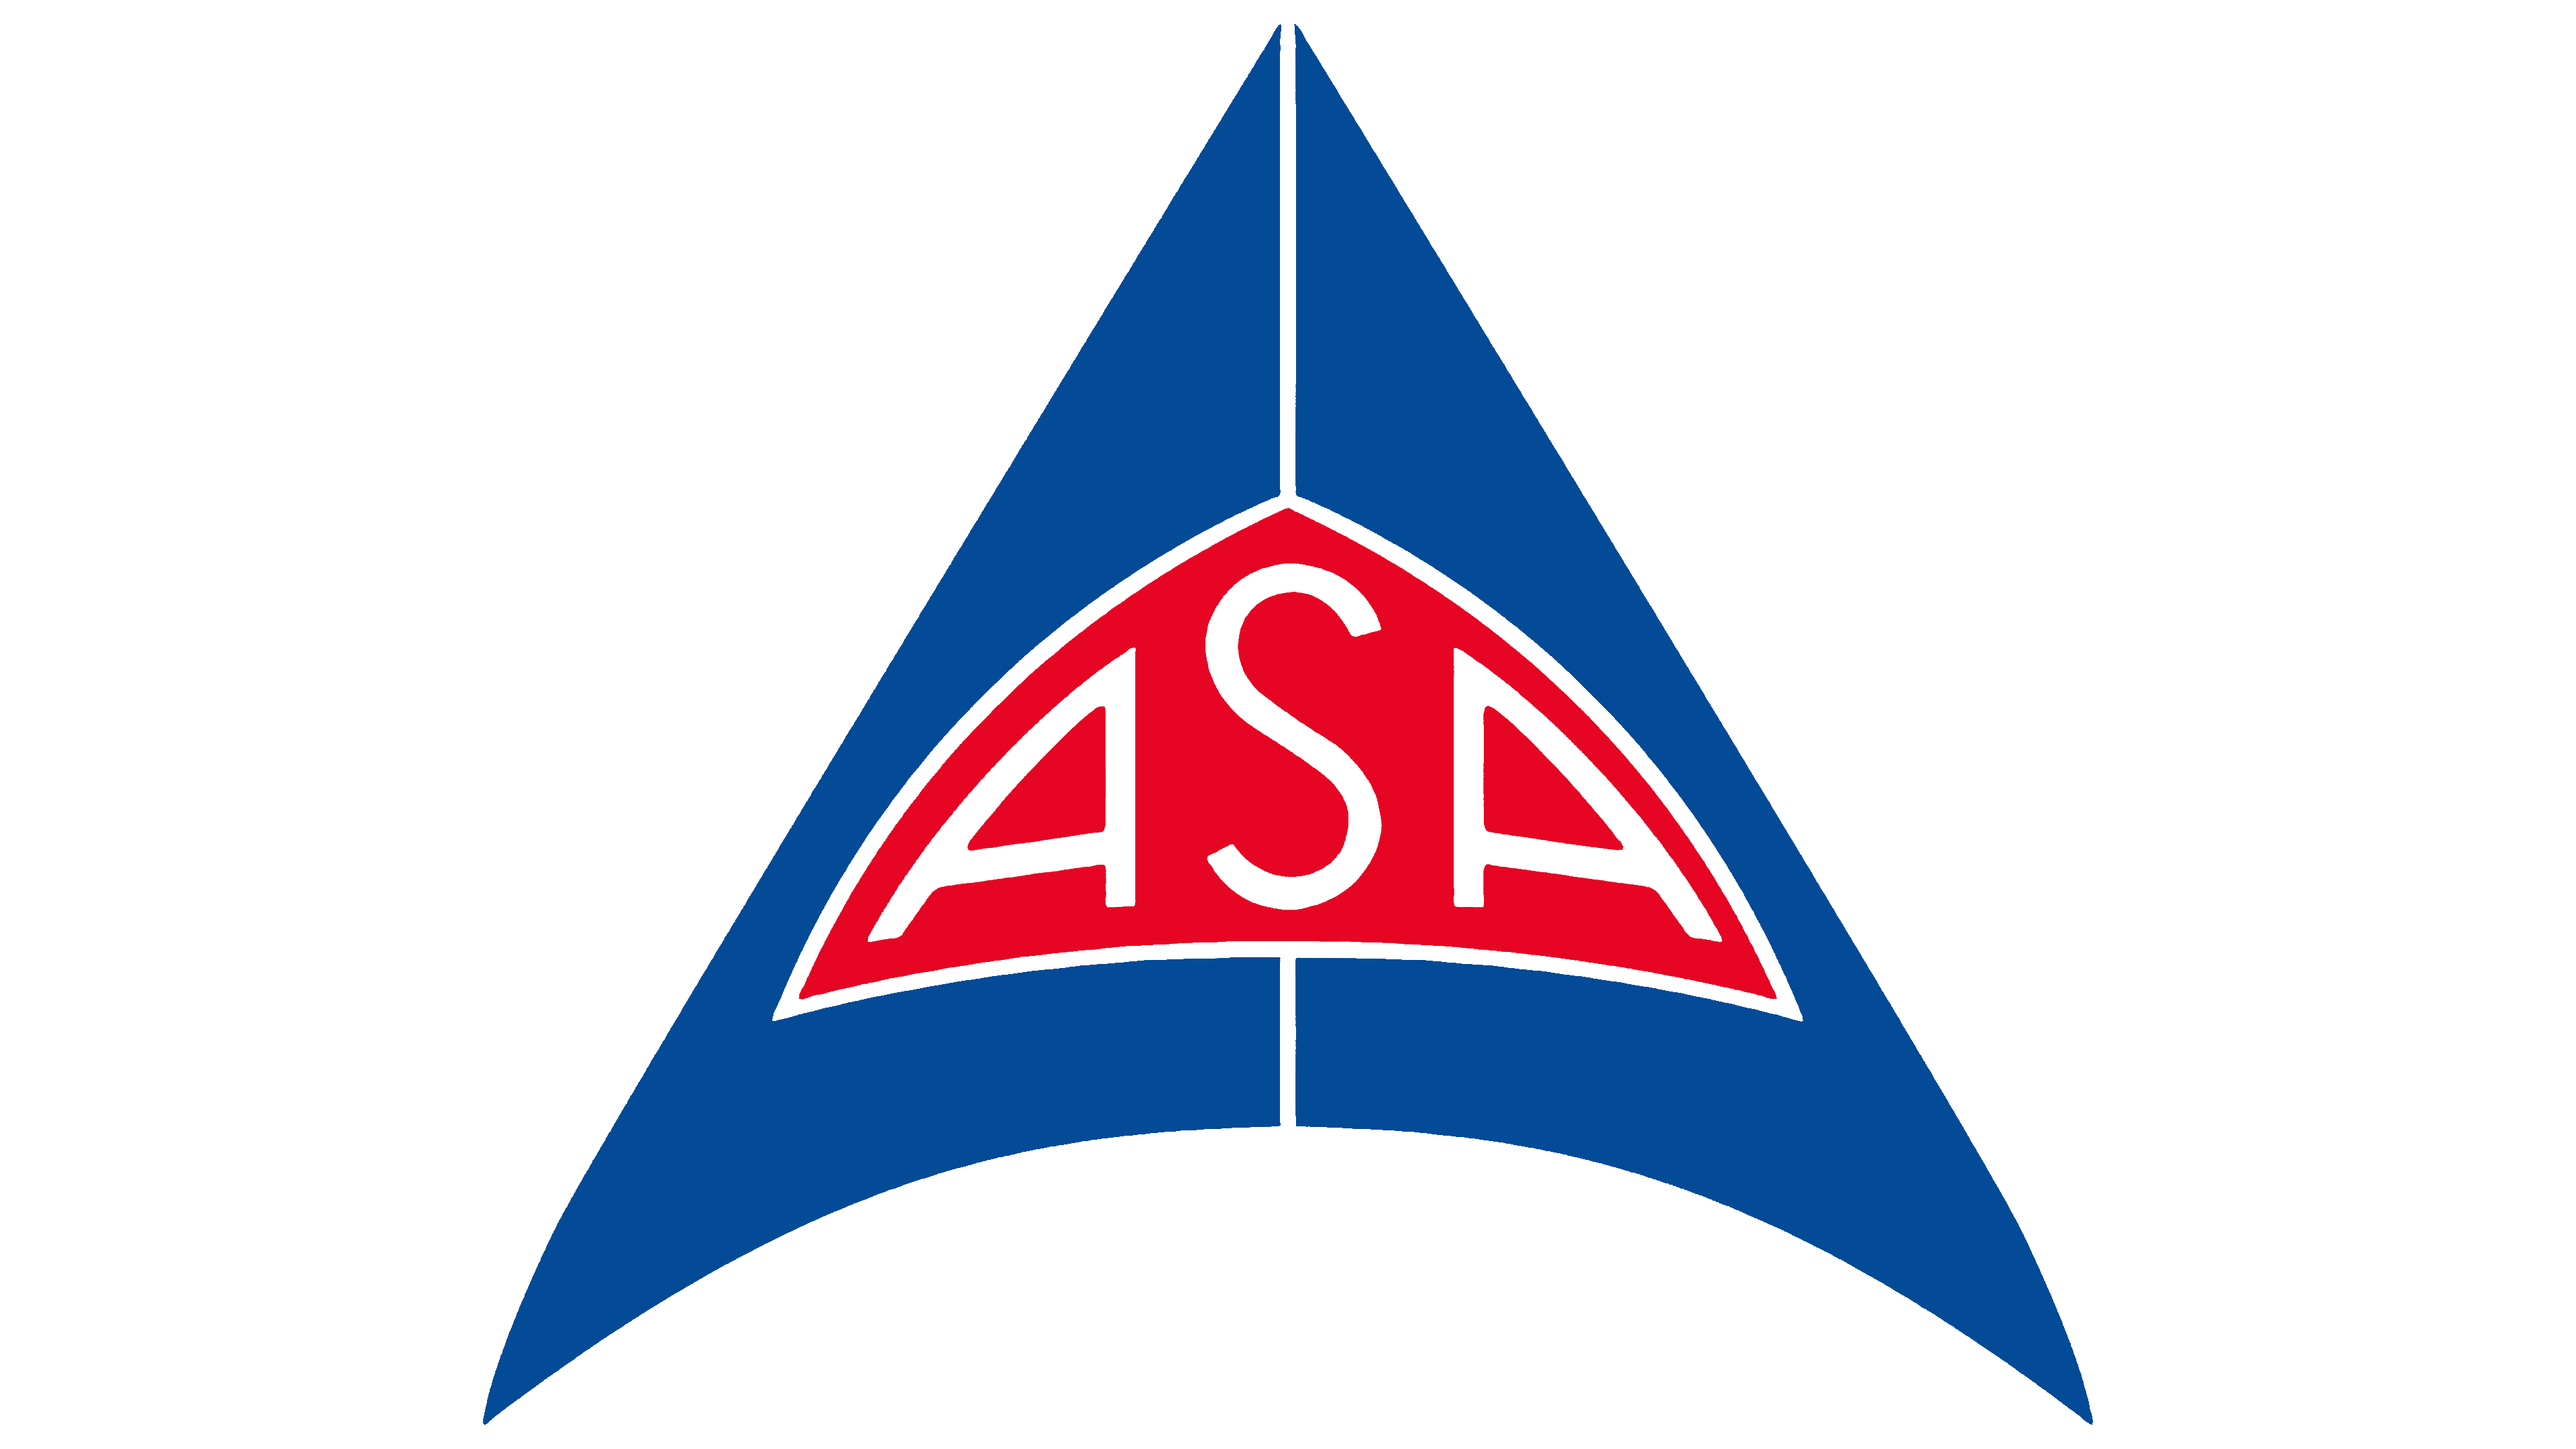 ASA Transparent Logo PNG